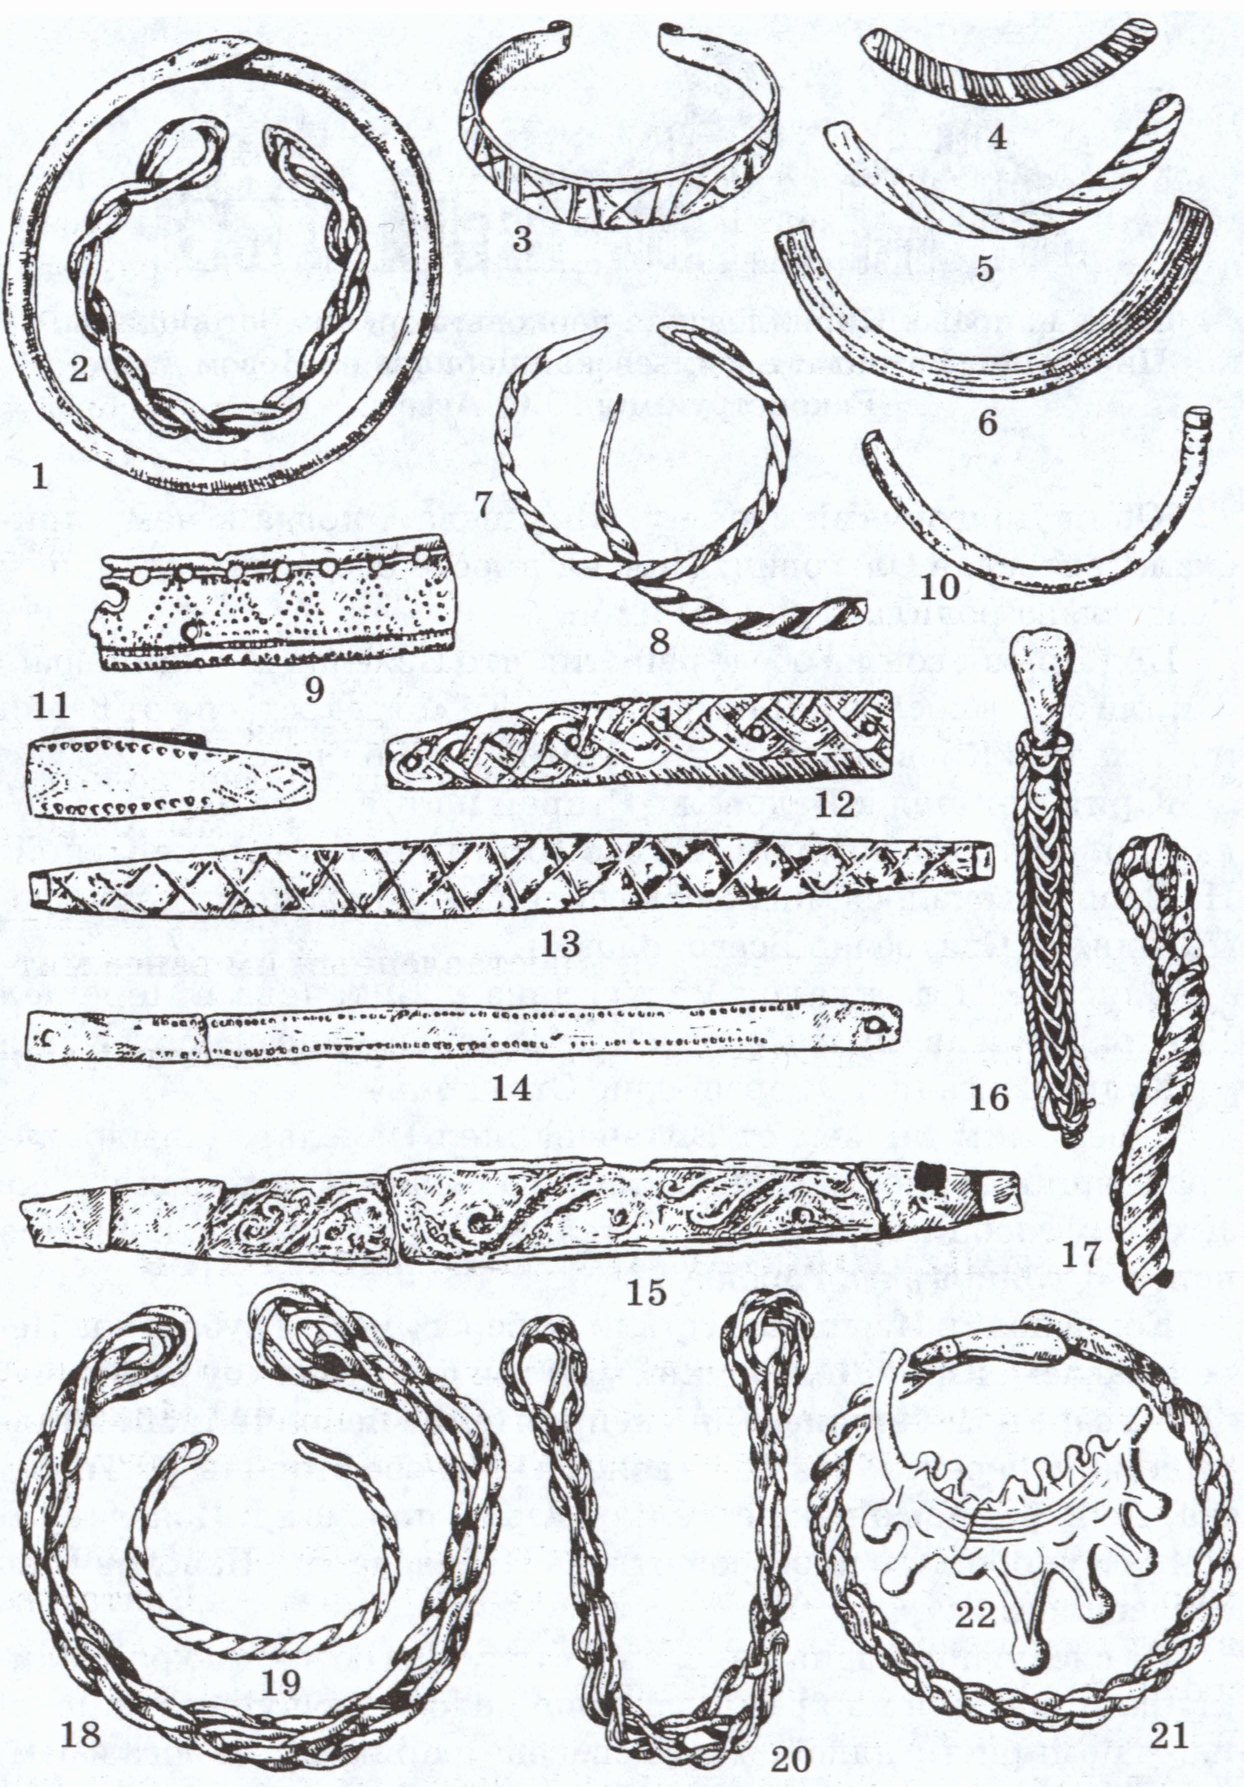 Предметы украшений: 1, 4—6 — браслеты стеклянные; 2, 3, 7—21 — браслеты бронзовые; 22 — височное кольцо